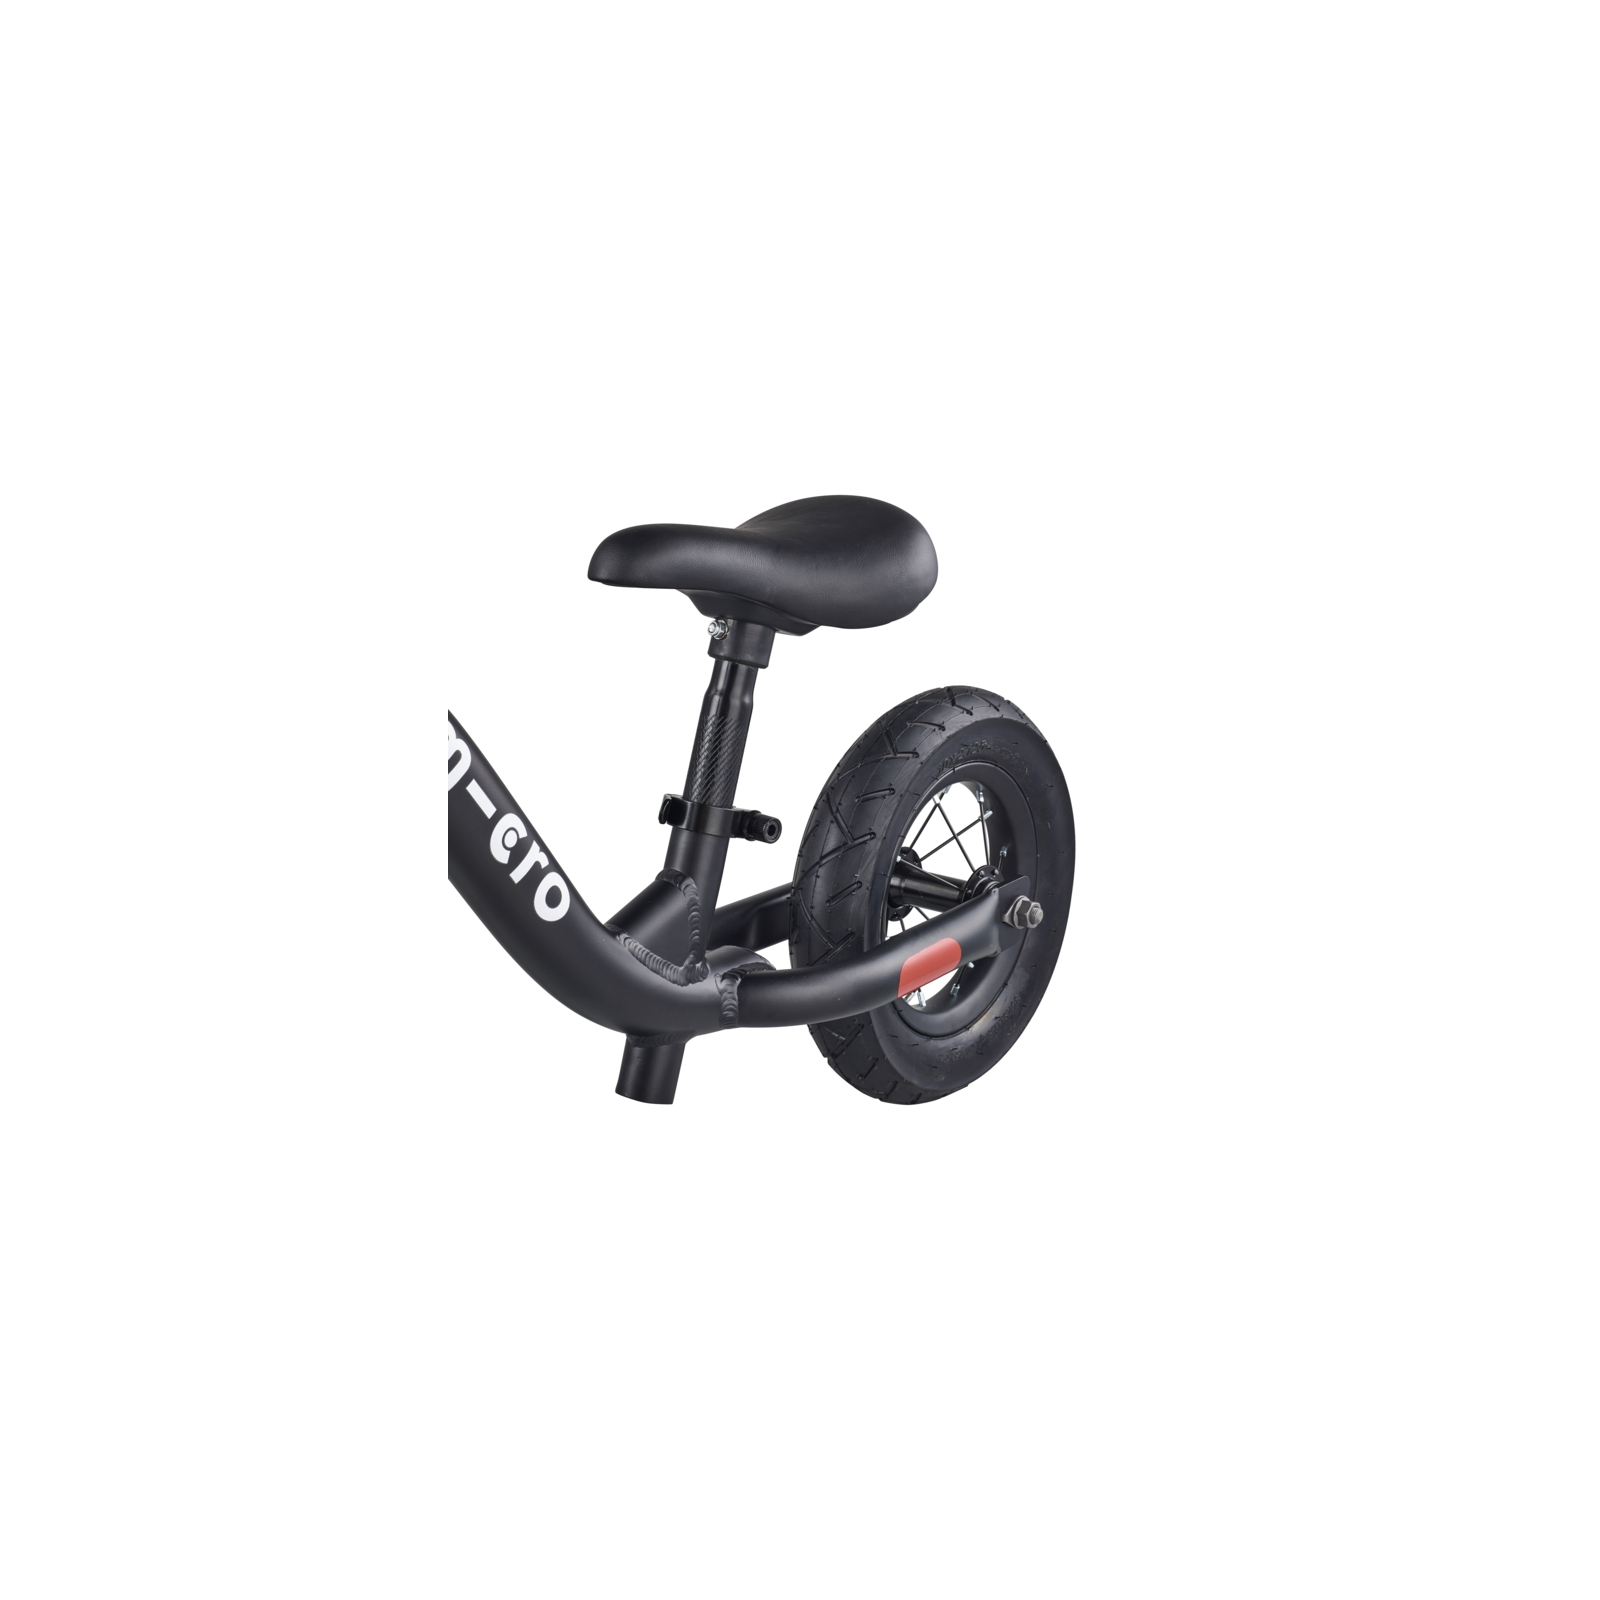 Біговел Micro Balance bike Black (GB0030) зображення 5